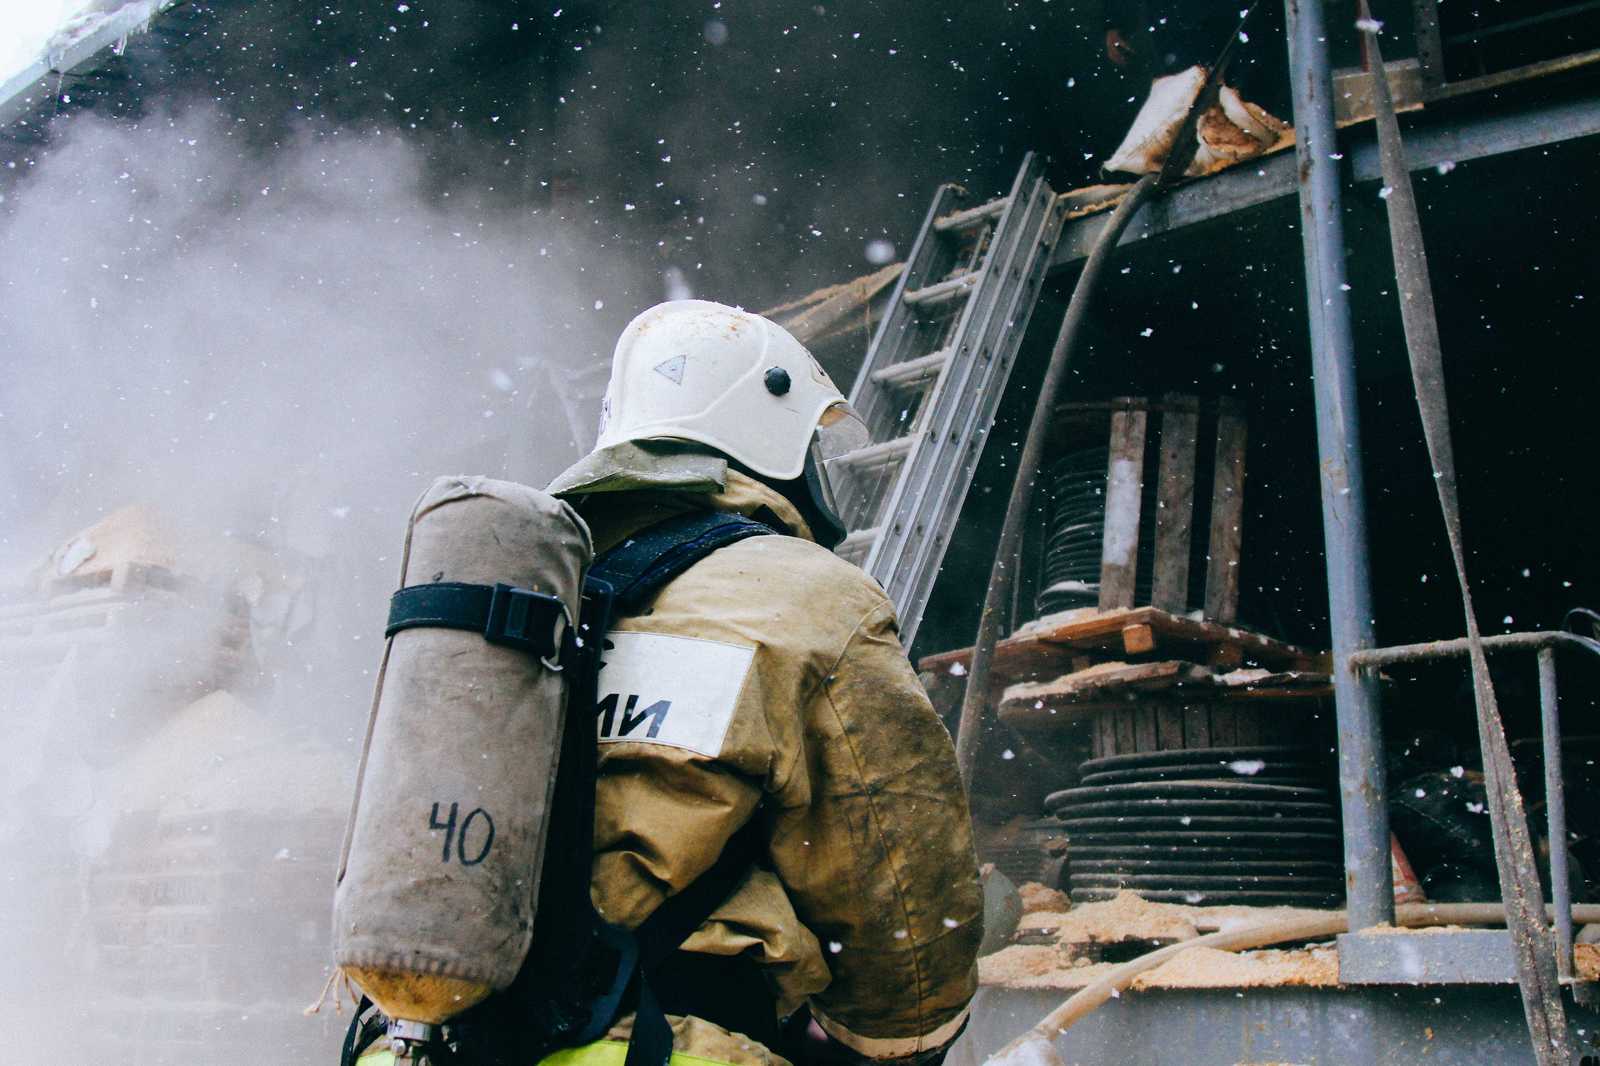 Фото Пожарных На Работе